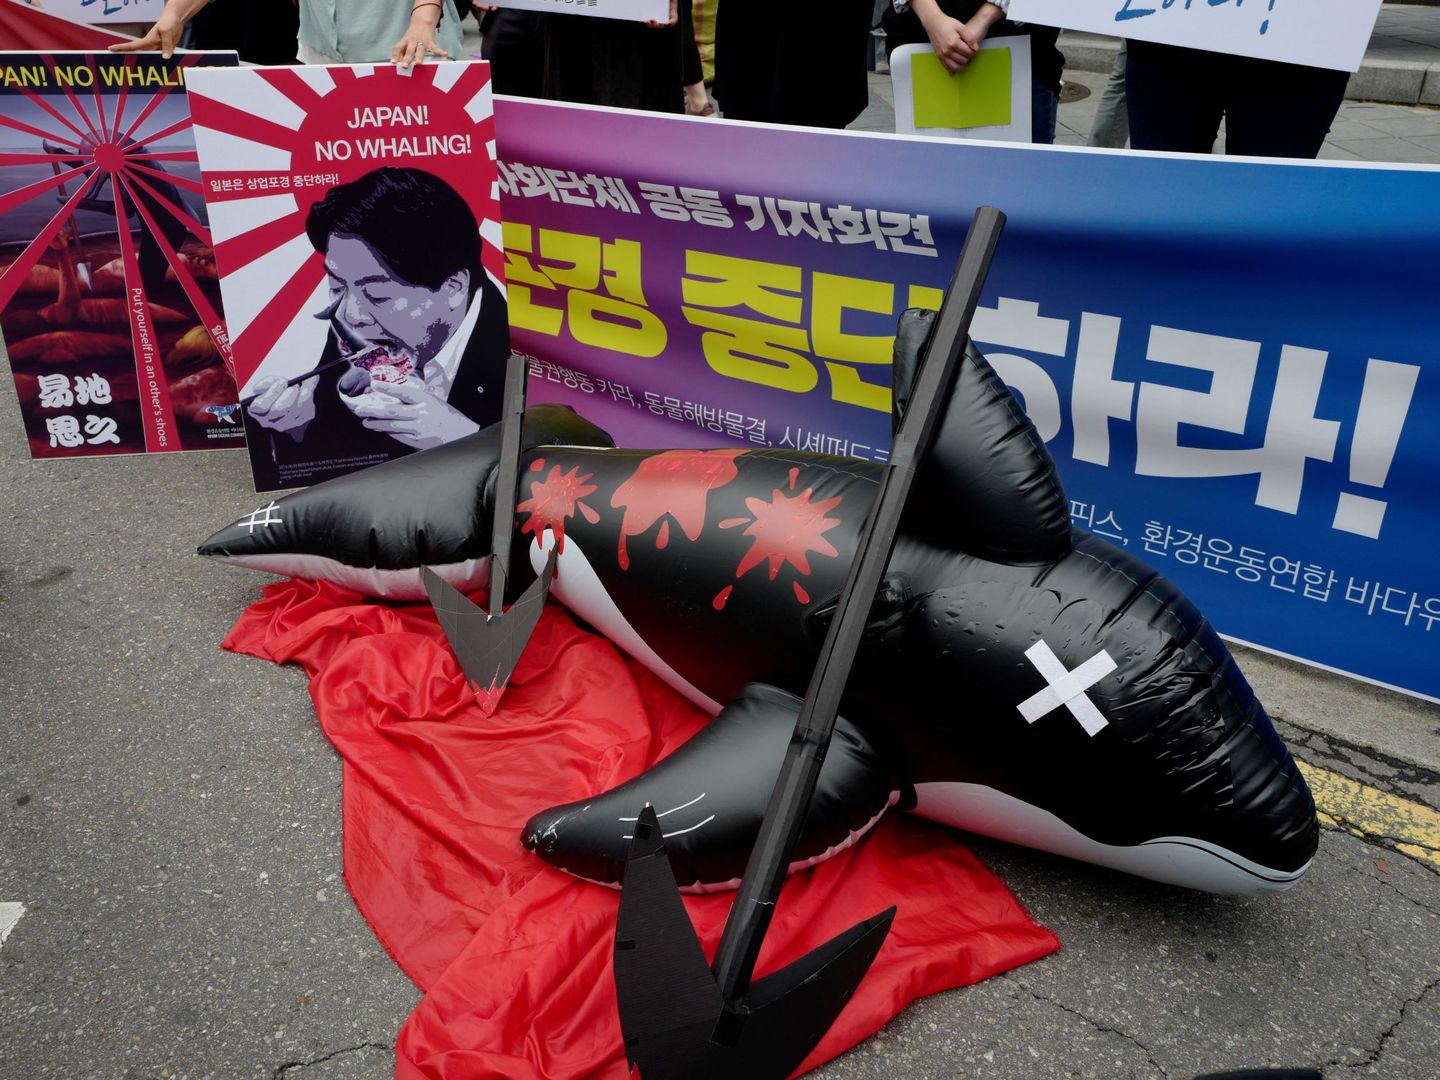 Activistas participan en una protesta contra las actividades balleneras de Japón, este miércoles cerca de la embajada japonesa en Seúl (Corea del Sur). (EFE)